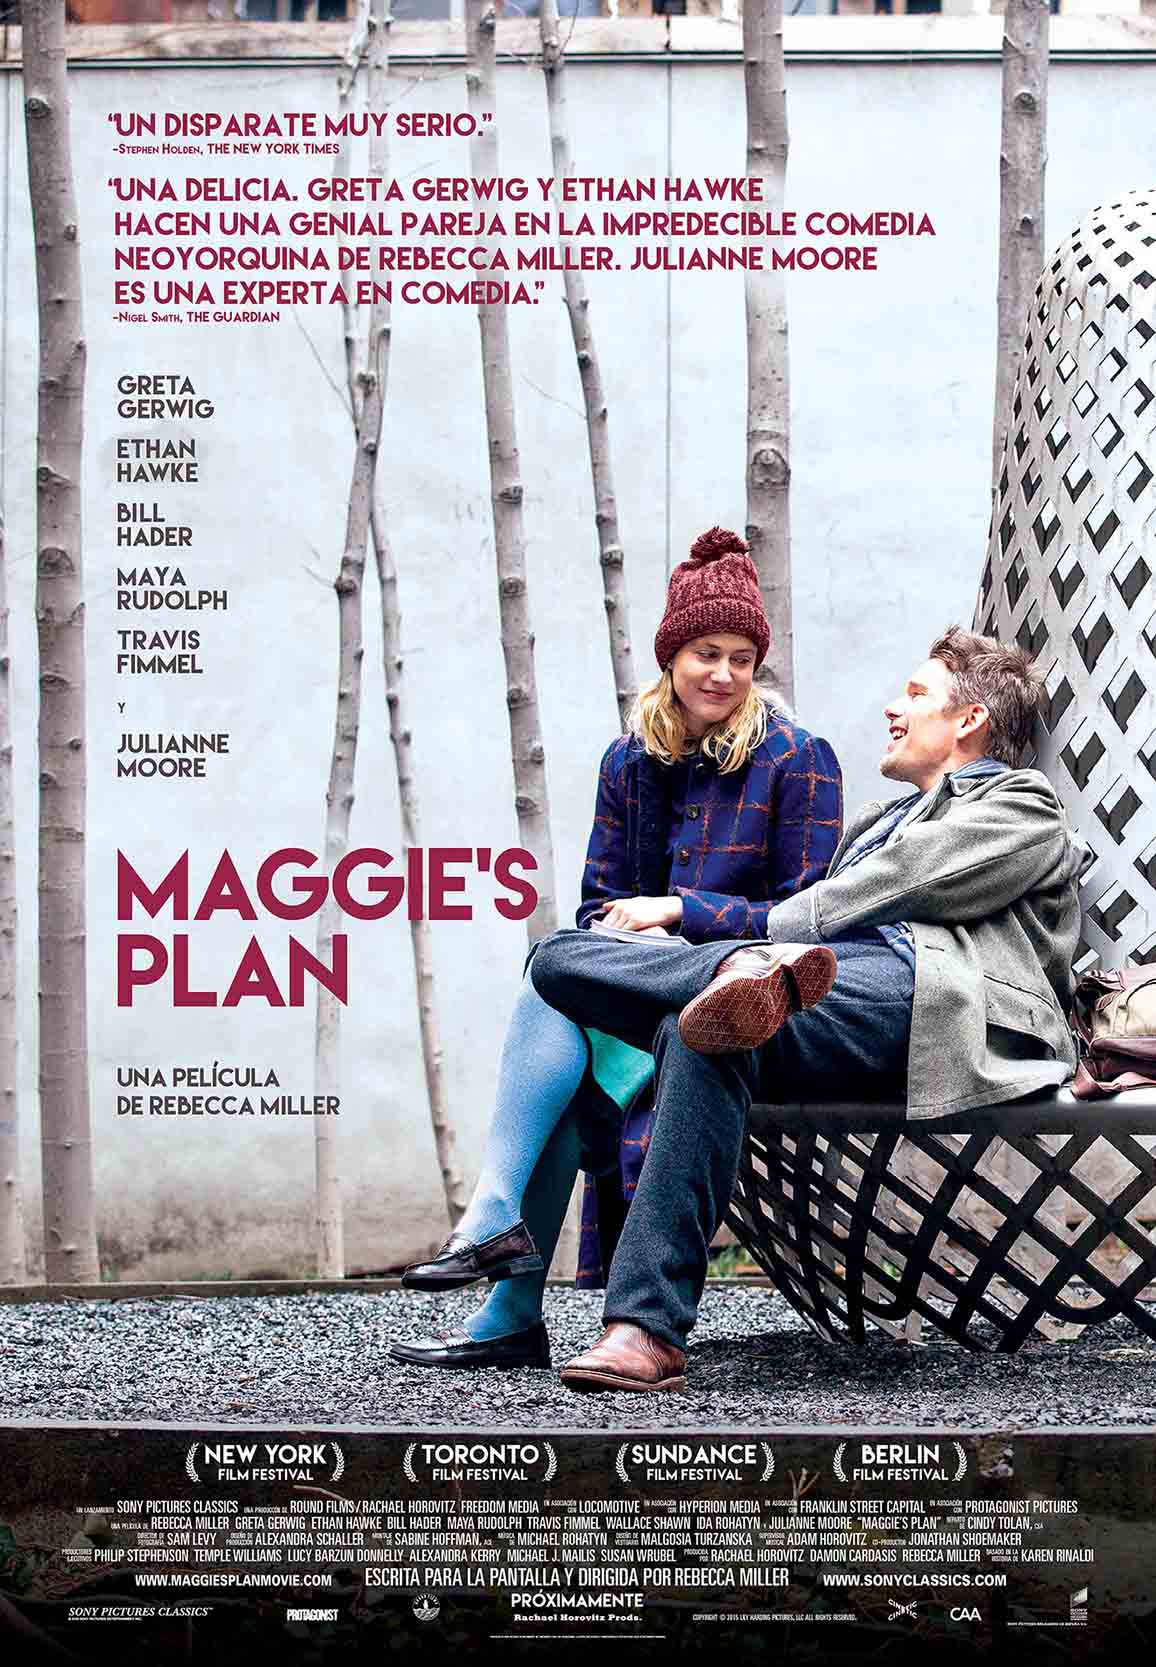 ‘Maggie’s plan’ nueva comedia romántica